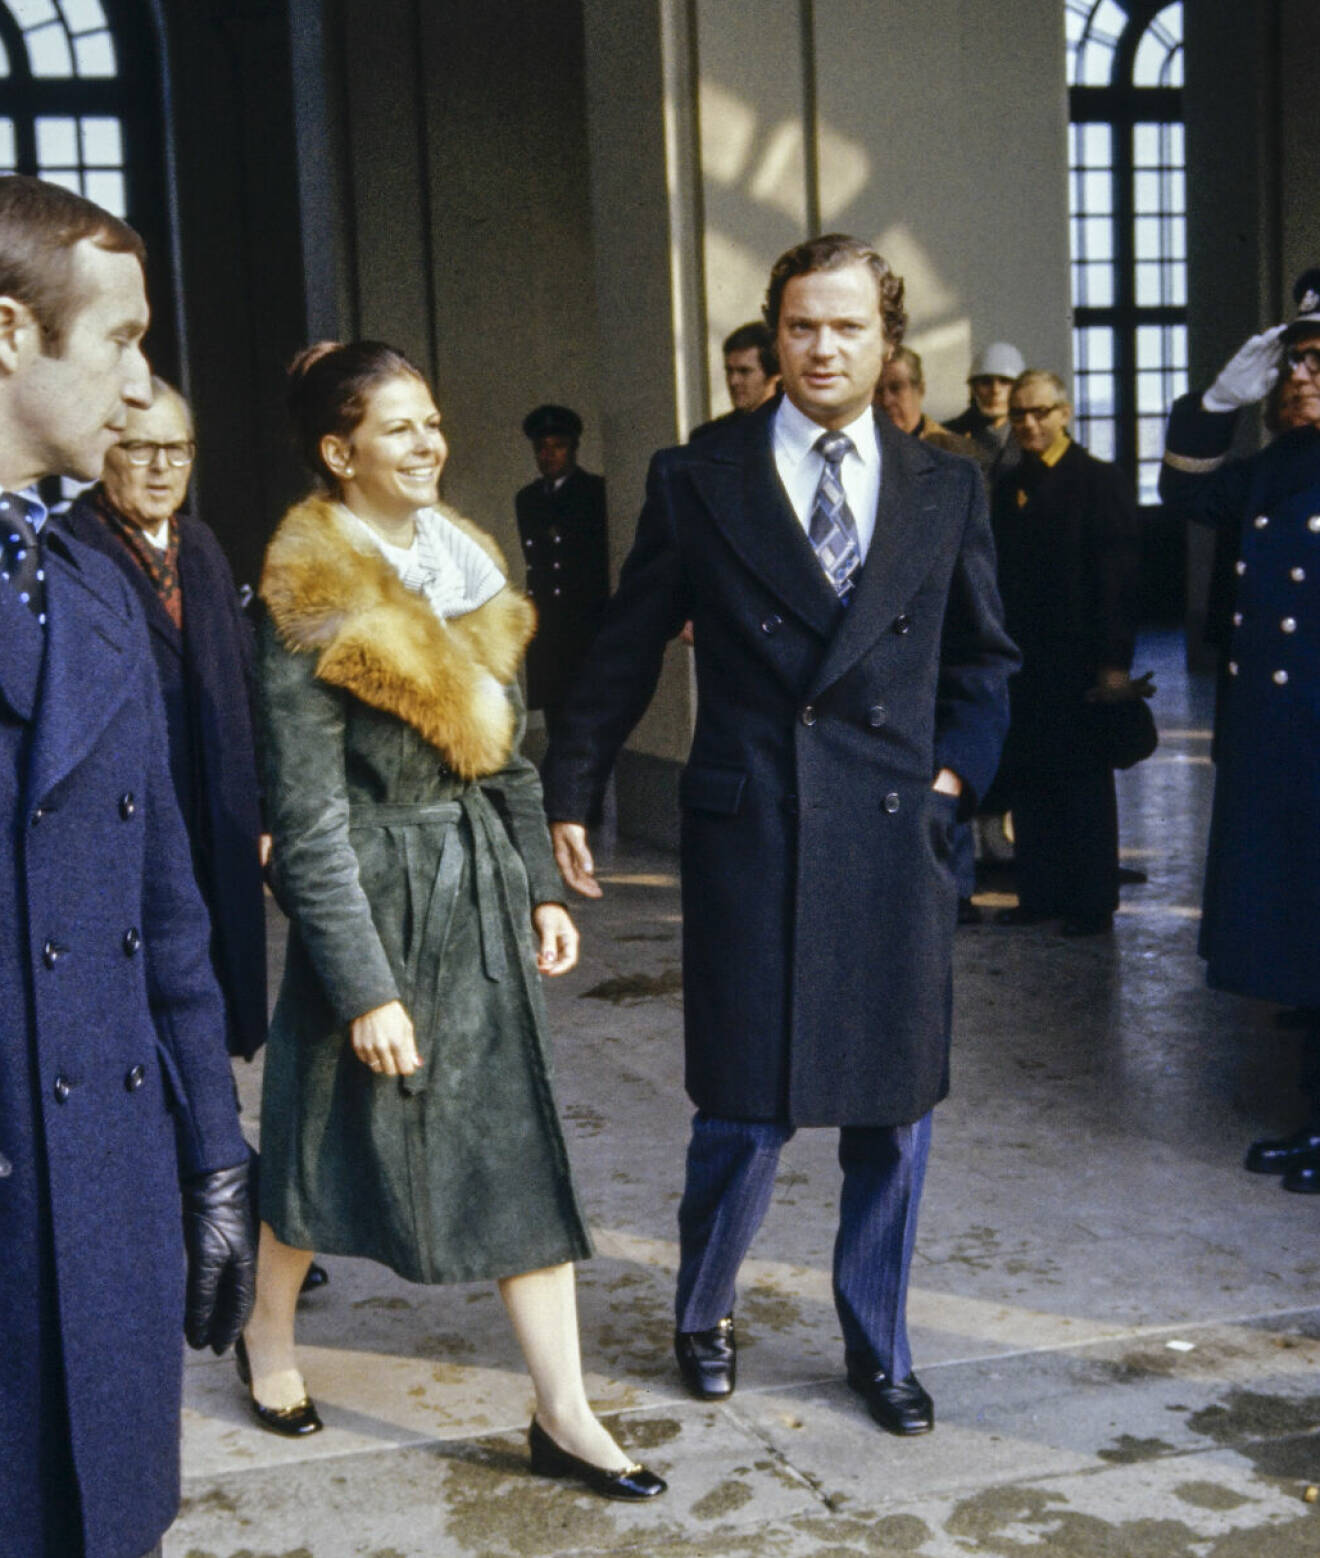 Kungen och drottning Silvia Sommerlath vid sin förlovning 1976